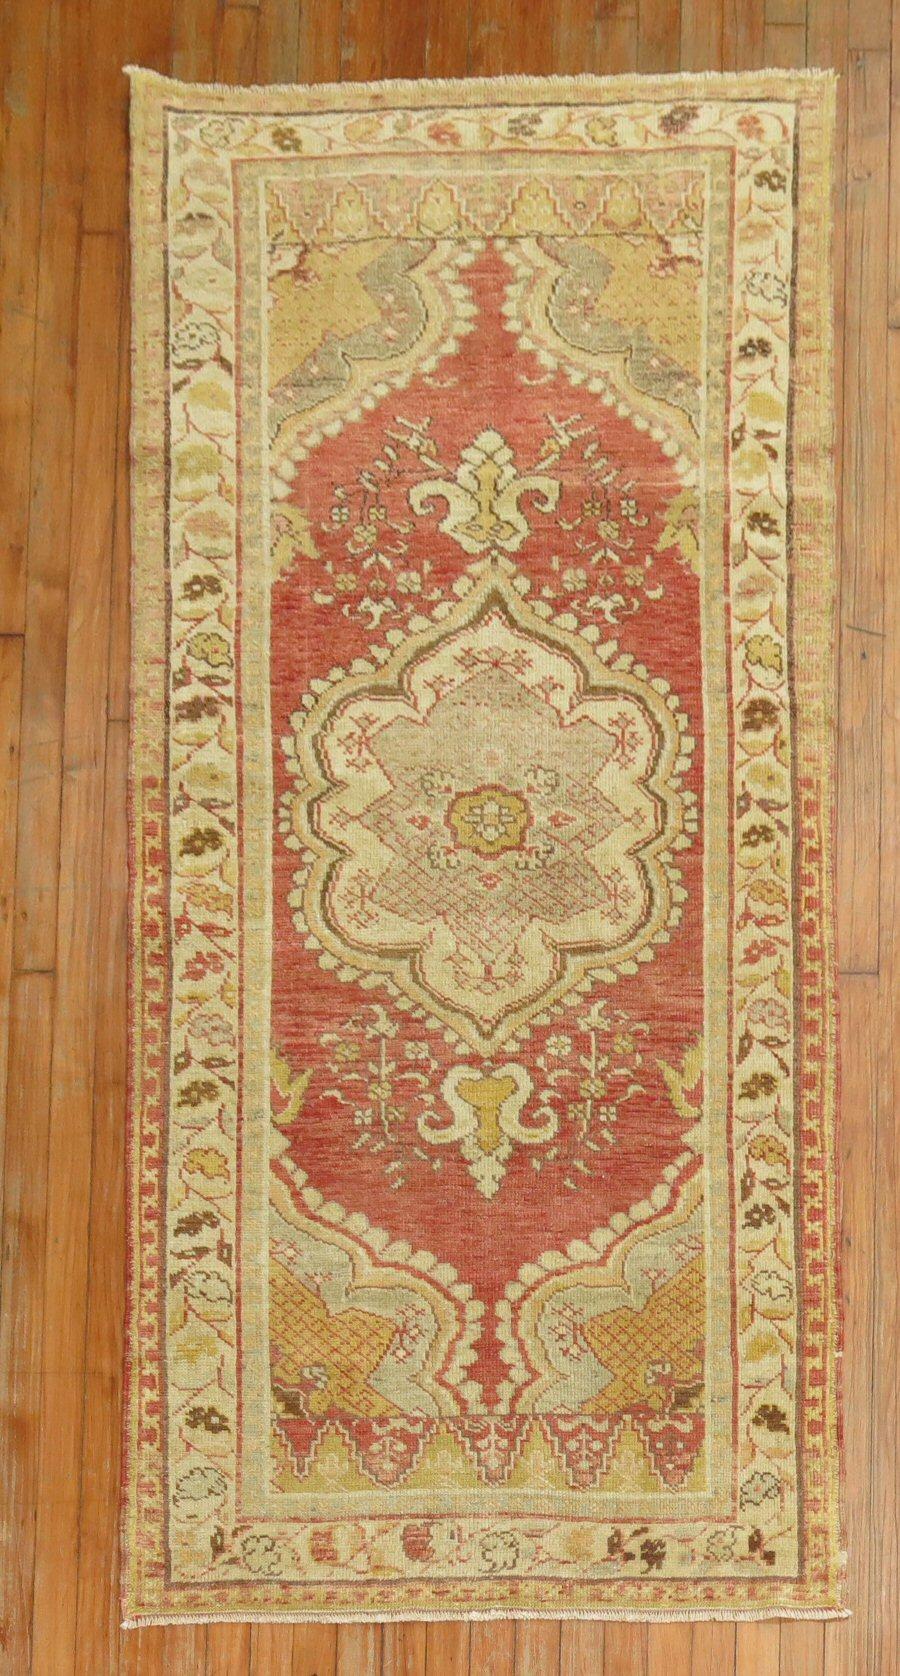 Roter, formaler, traditioneller türkischer Teppich aus der Mitte des 20. Jahrhunderts. 

Maße: 3'2'' x 6'6''.